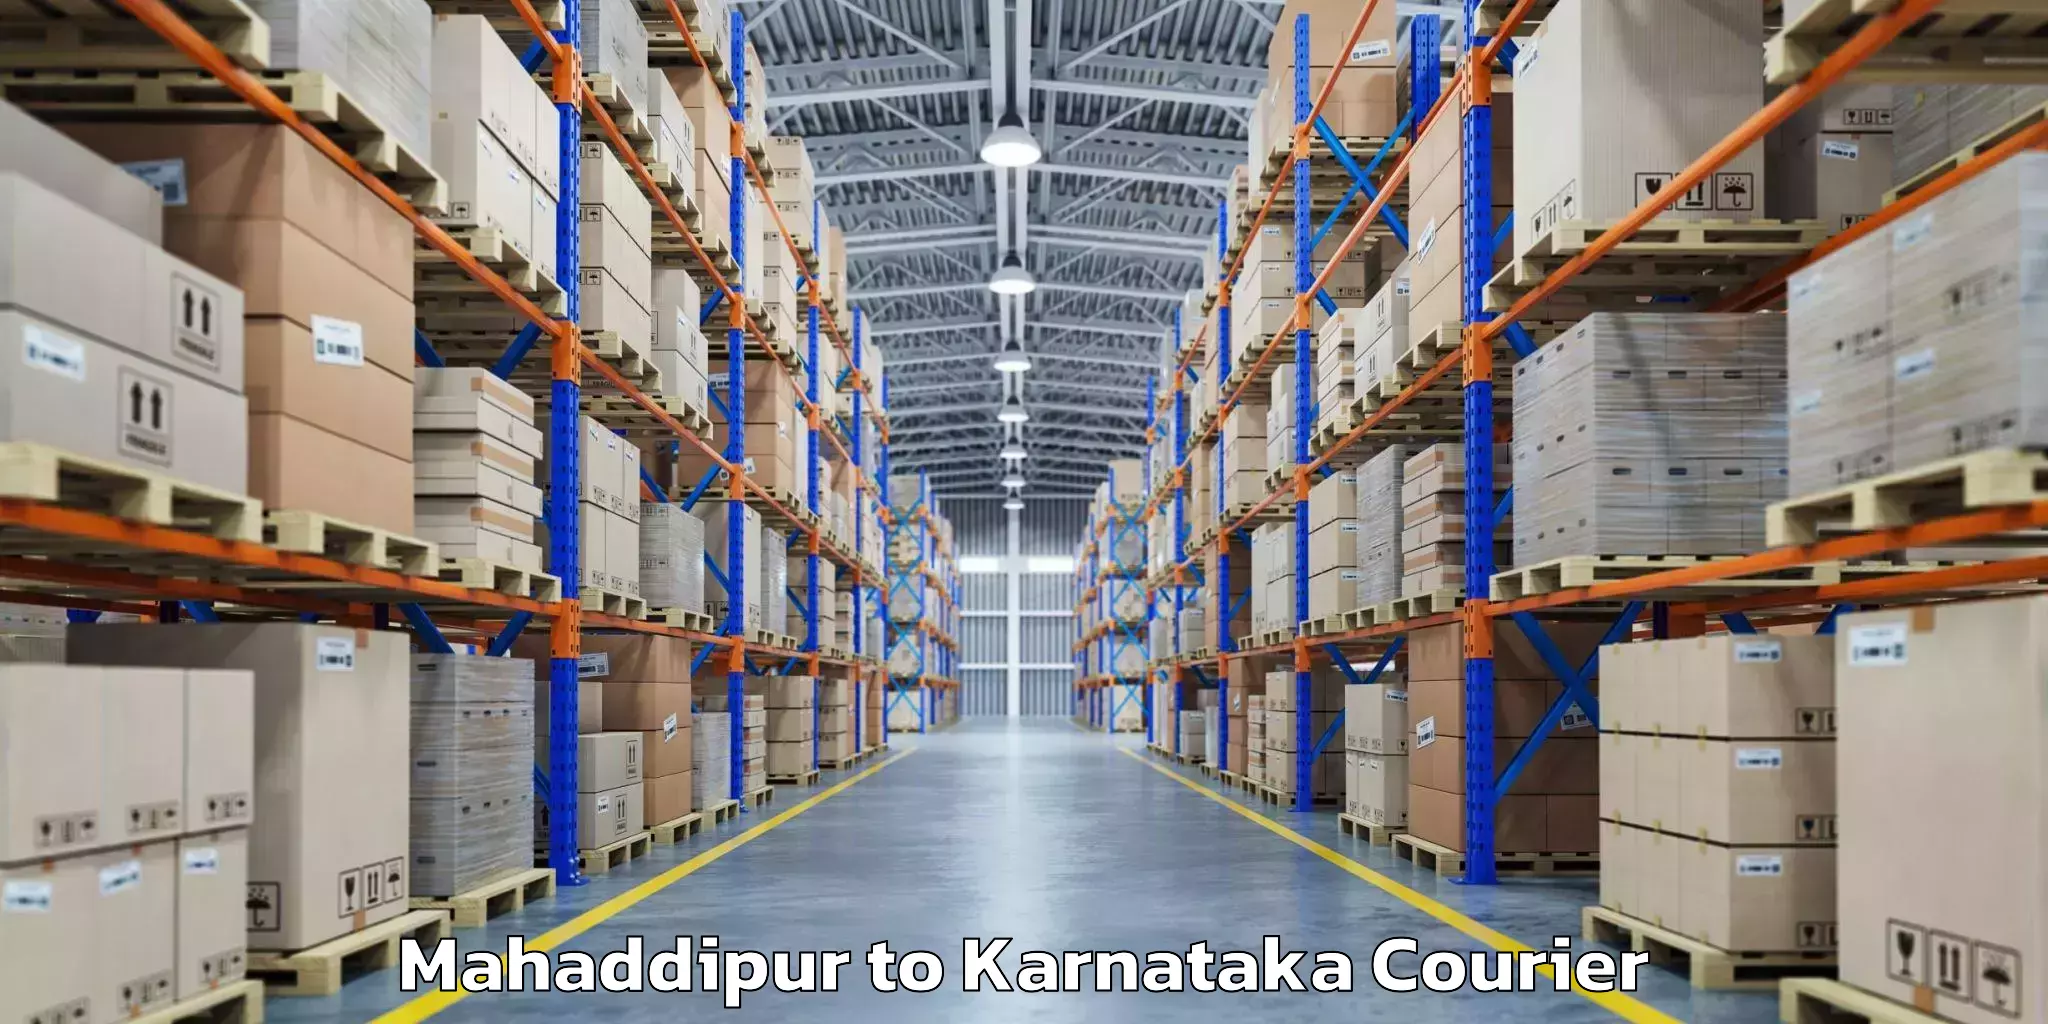 Baggage shipping calculator Mahaddipur to Koppal